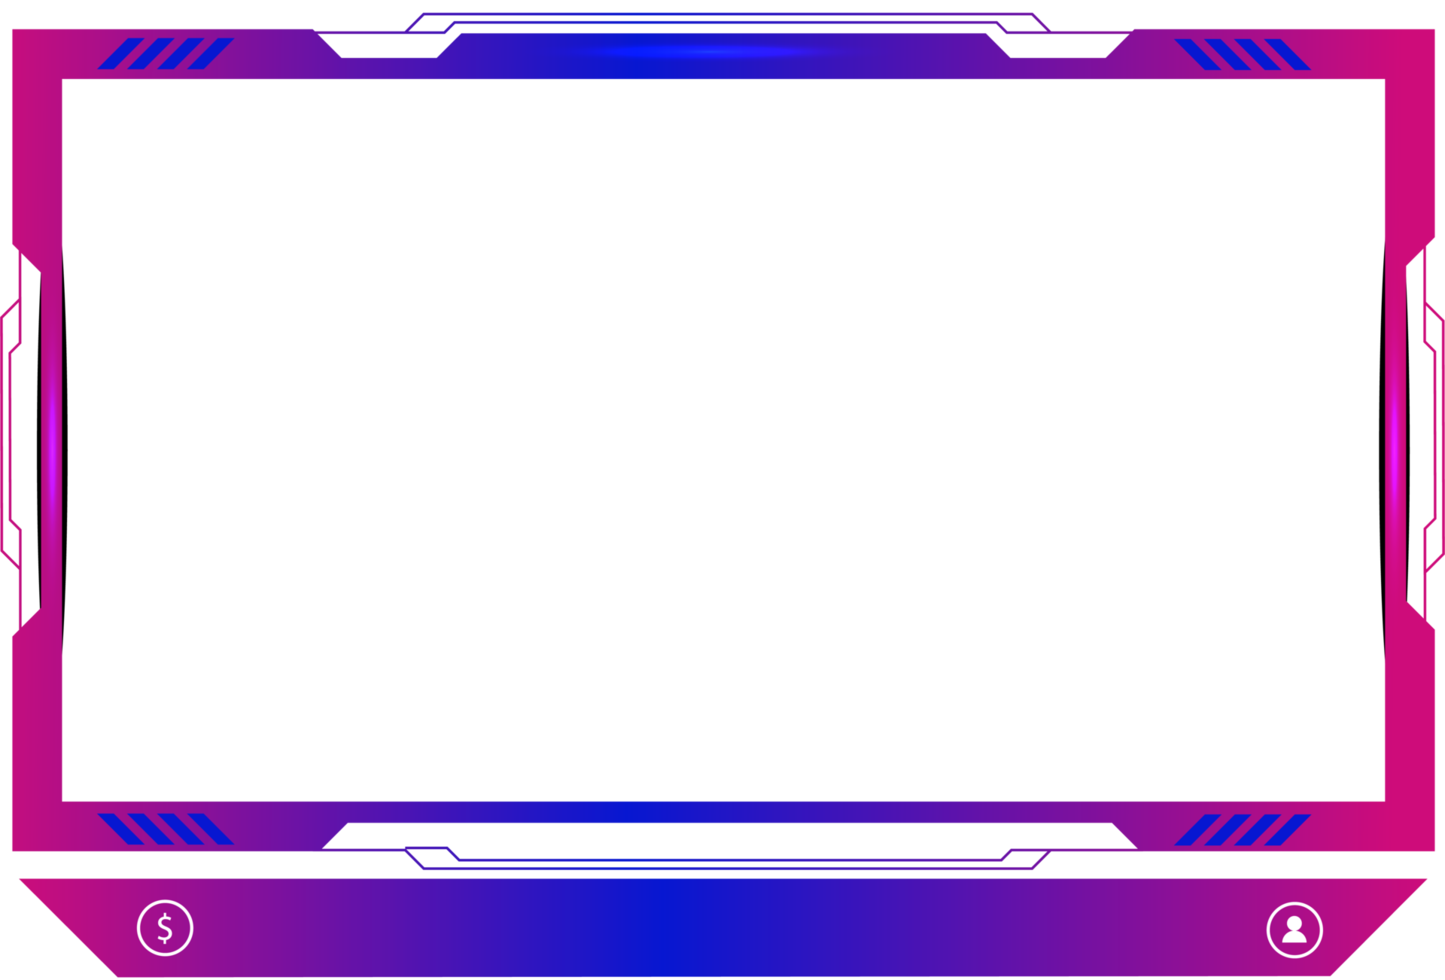 leven streaming bedekking decoratie met meisjesachtig roze en blauw kleur schaduw. online gaming scherm paneel en grens ontwerp voor gamers. leven uitzending elementen PNG met kleurrijk toetsen.